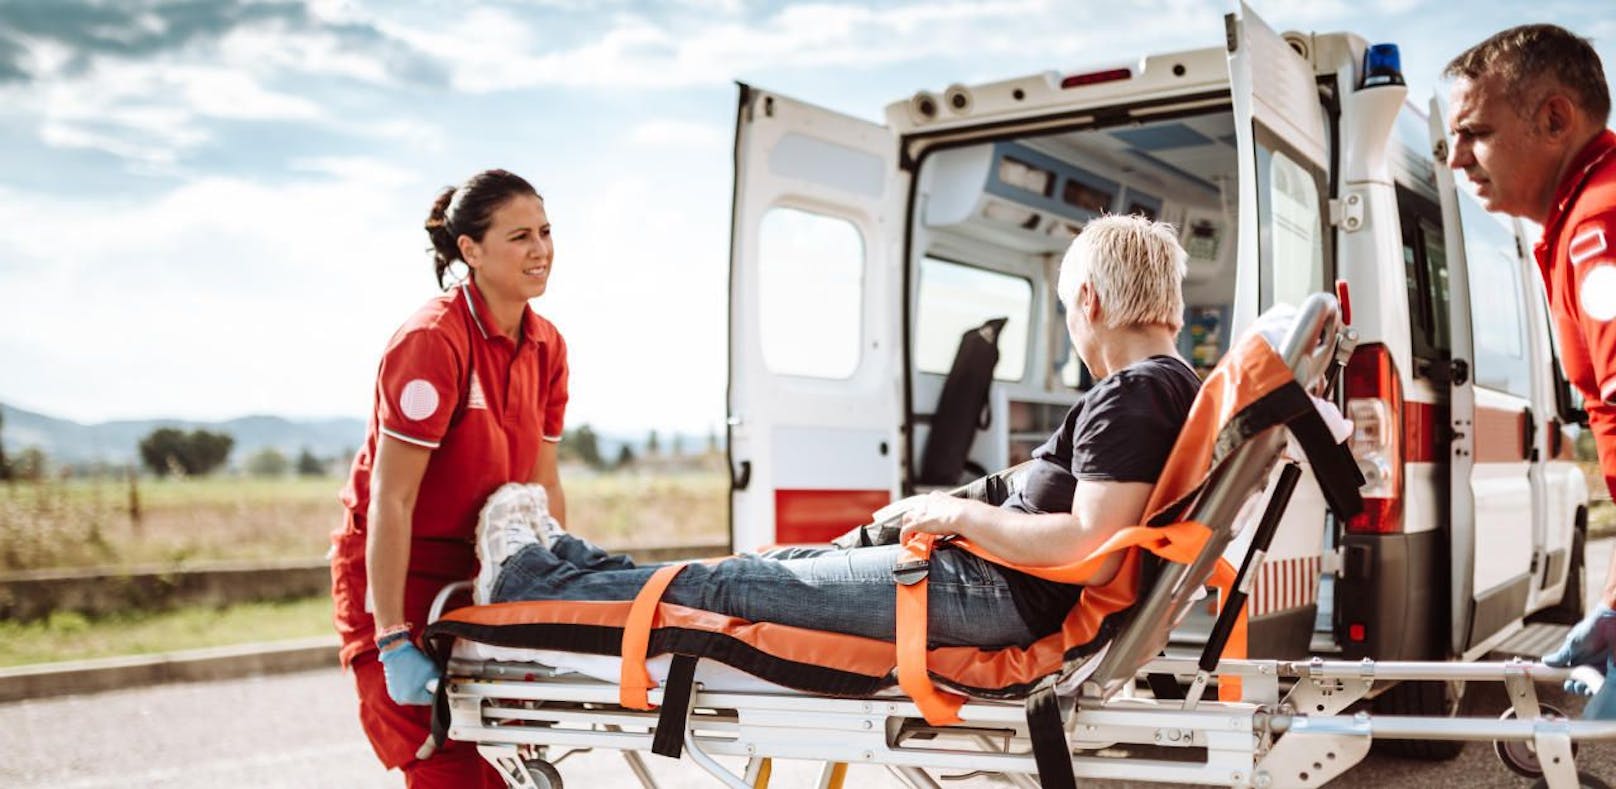 Liegende Patienten dürfen nur noch von Rettungsorganisationen transportiert werden.